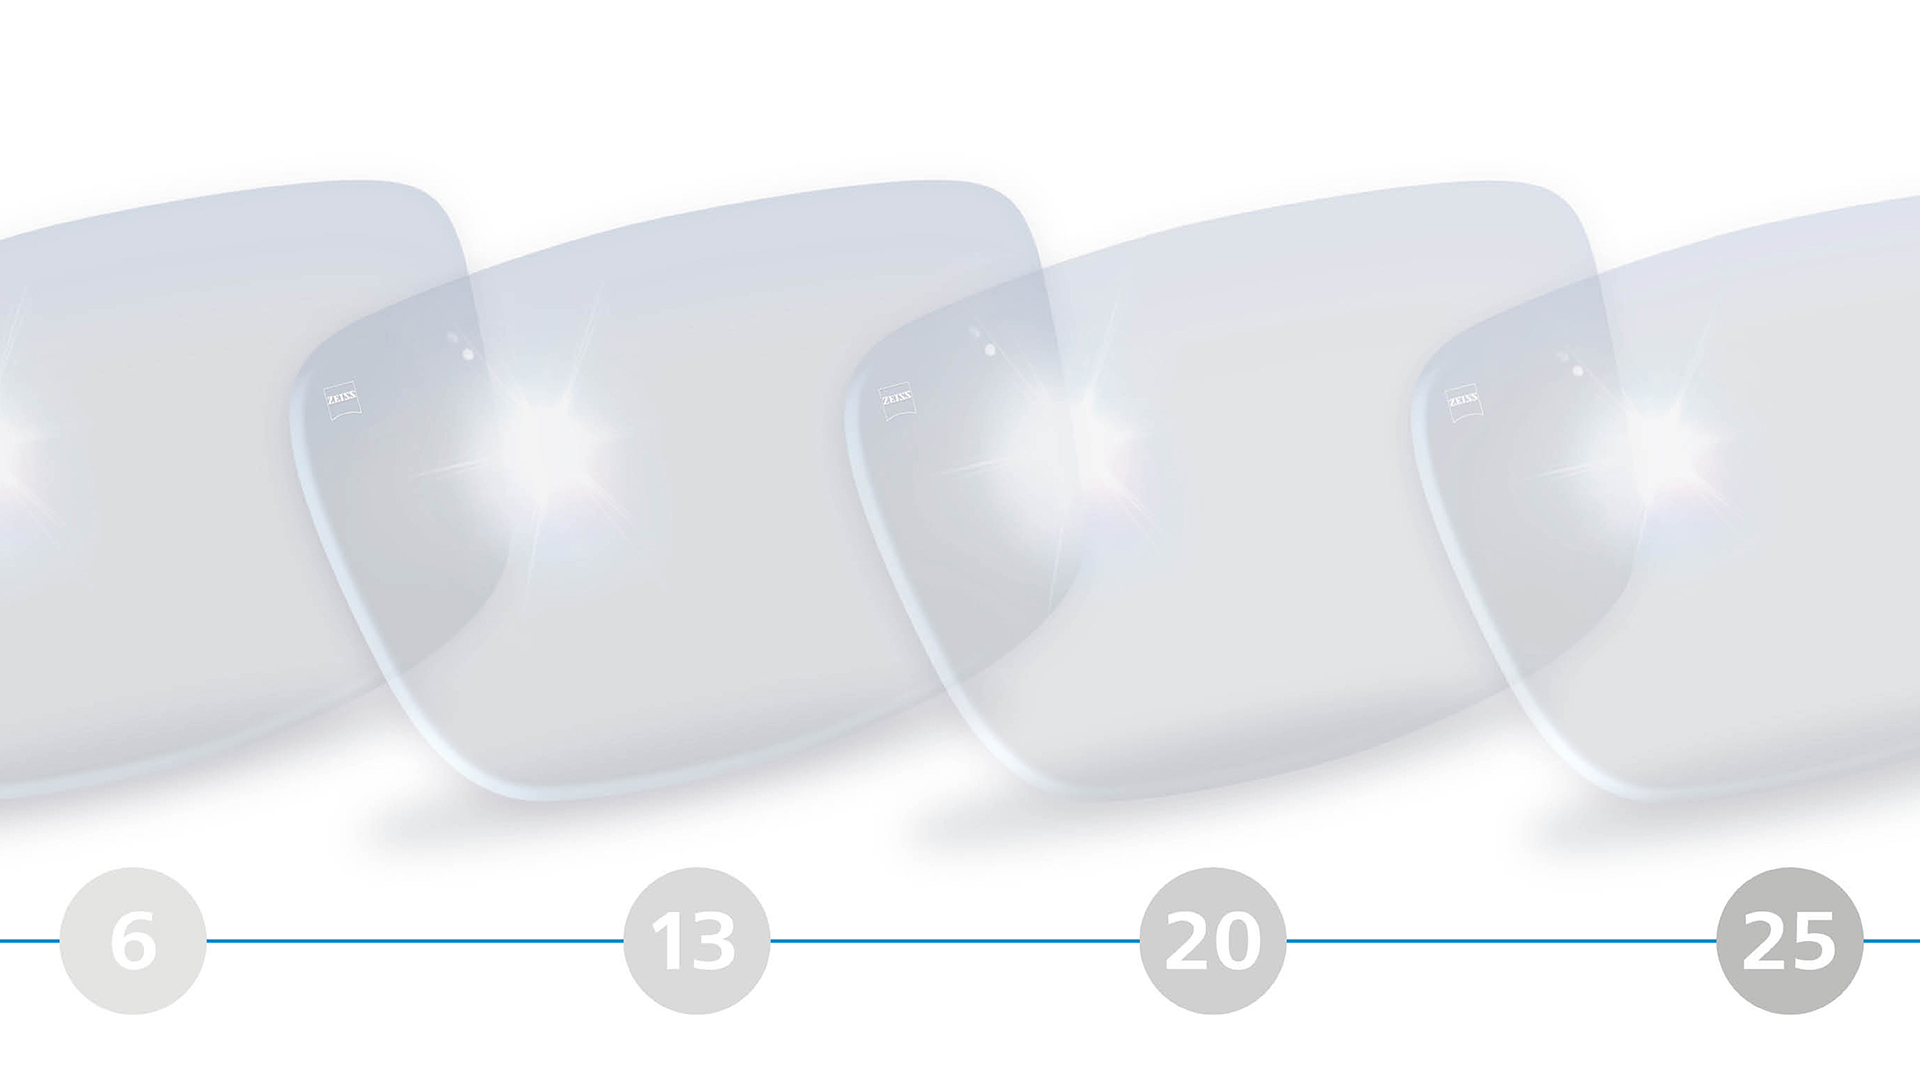 Ilustração em 3D de lentes monofocais para a faixa etária dos 6 aos 25 anos.